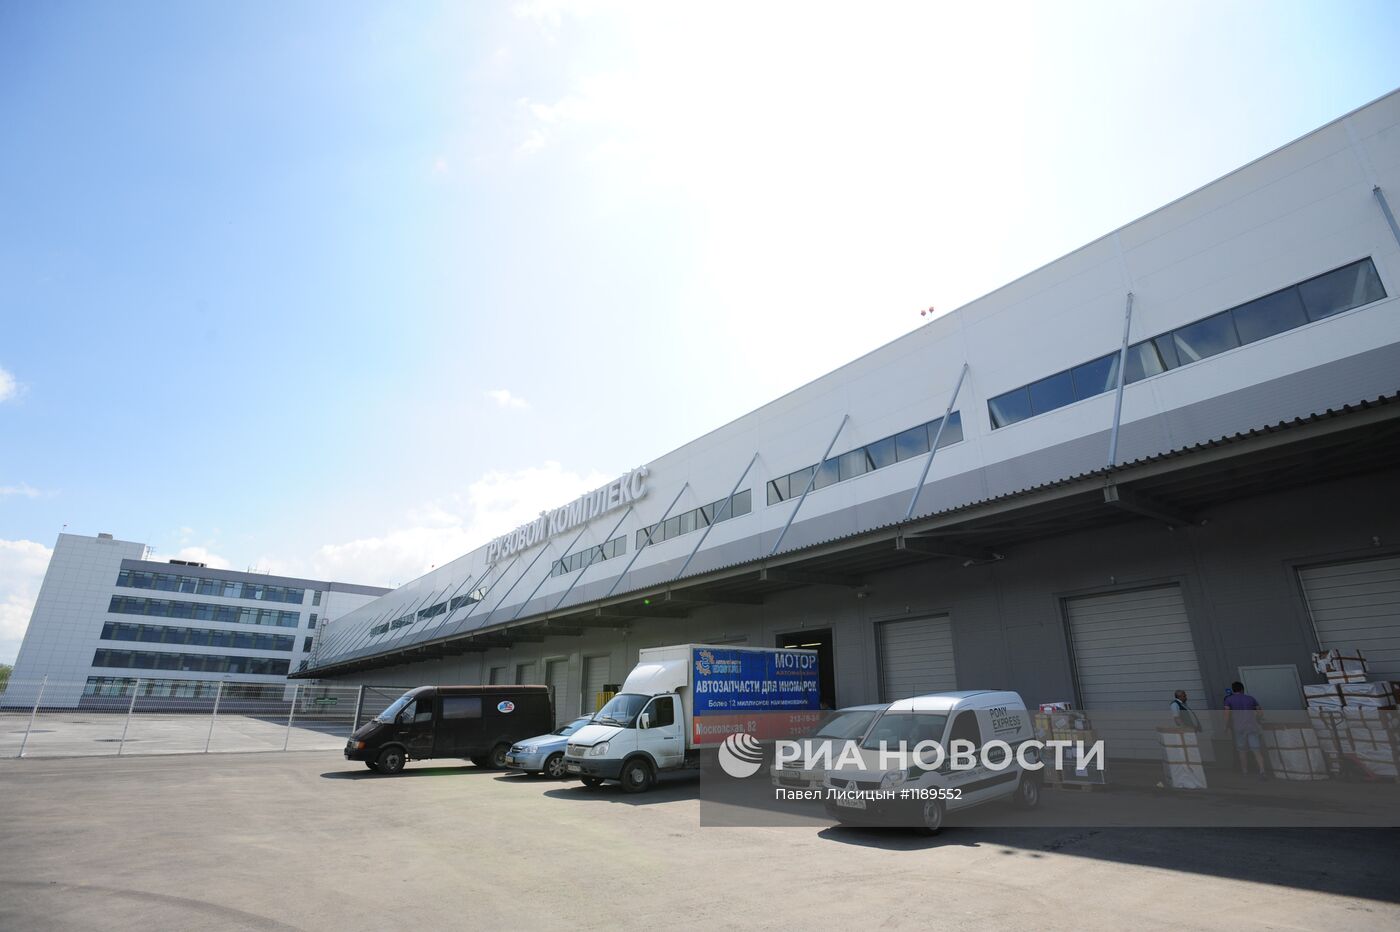 Открытие нового грузового терминала в аэропорту Екатеринбурга